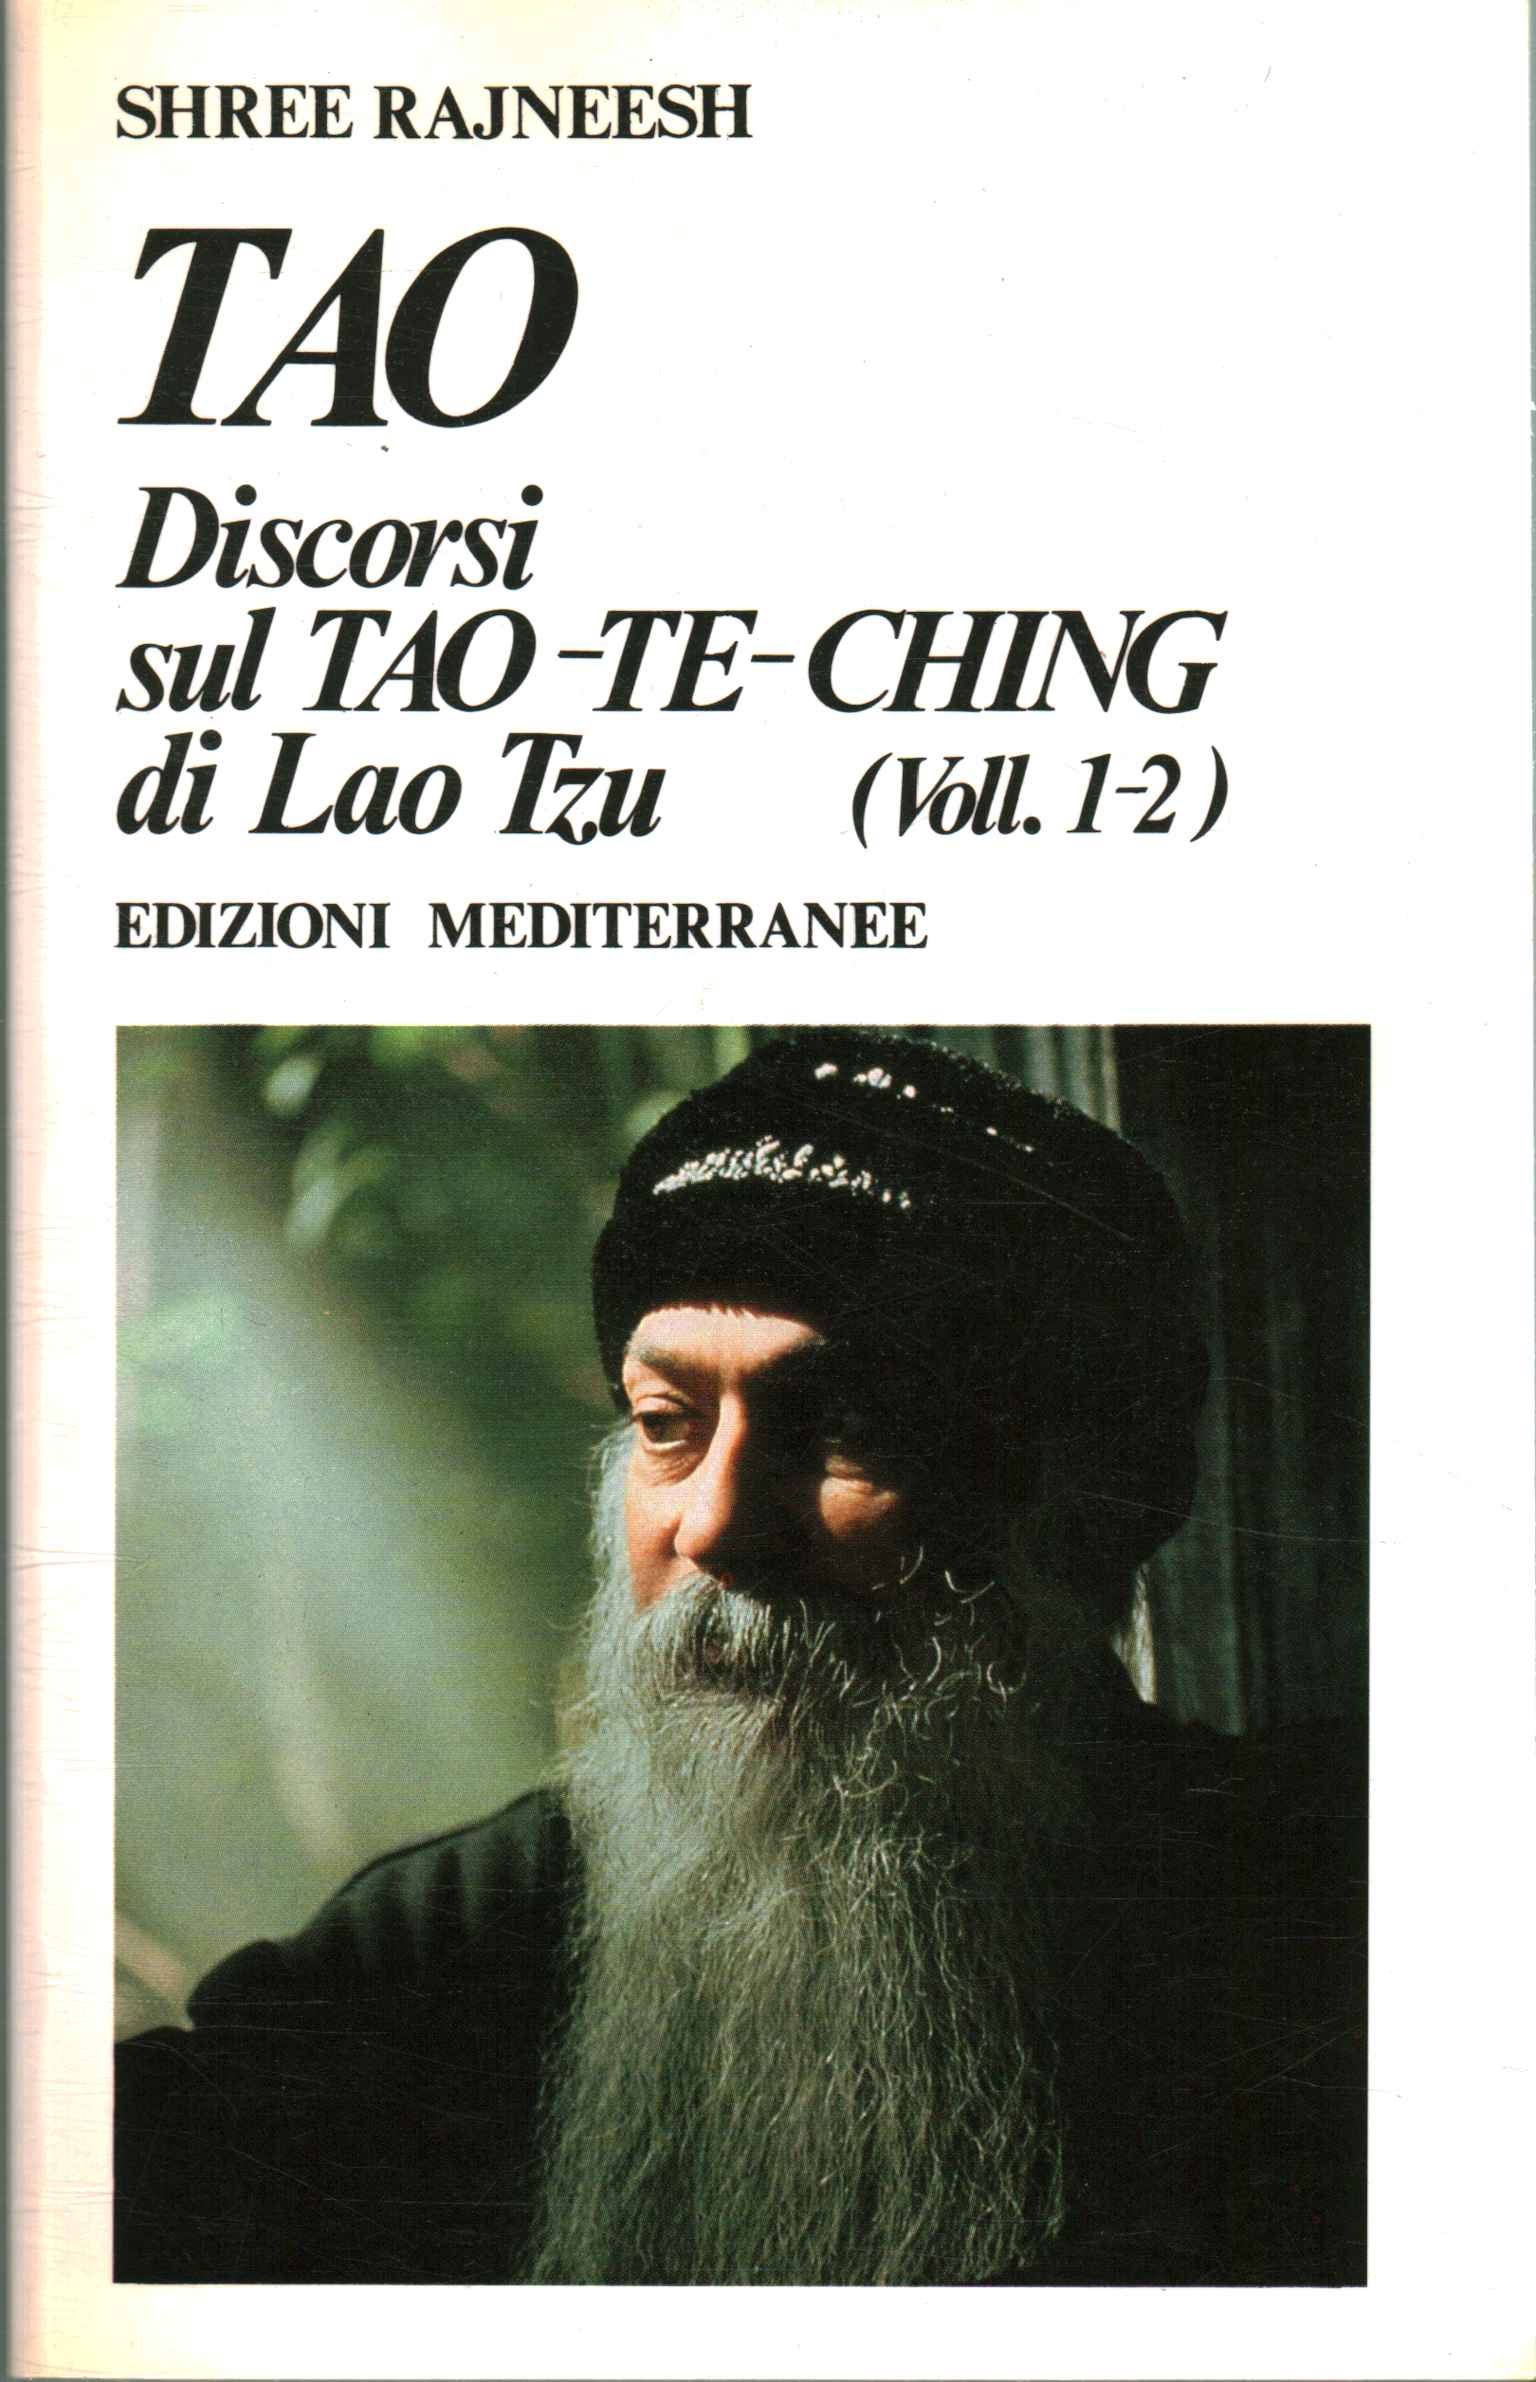 TAO: Discourses on Lao's Tao-Te-Ching